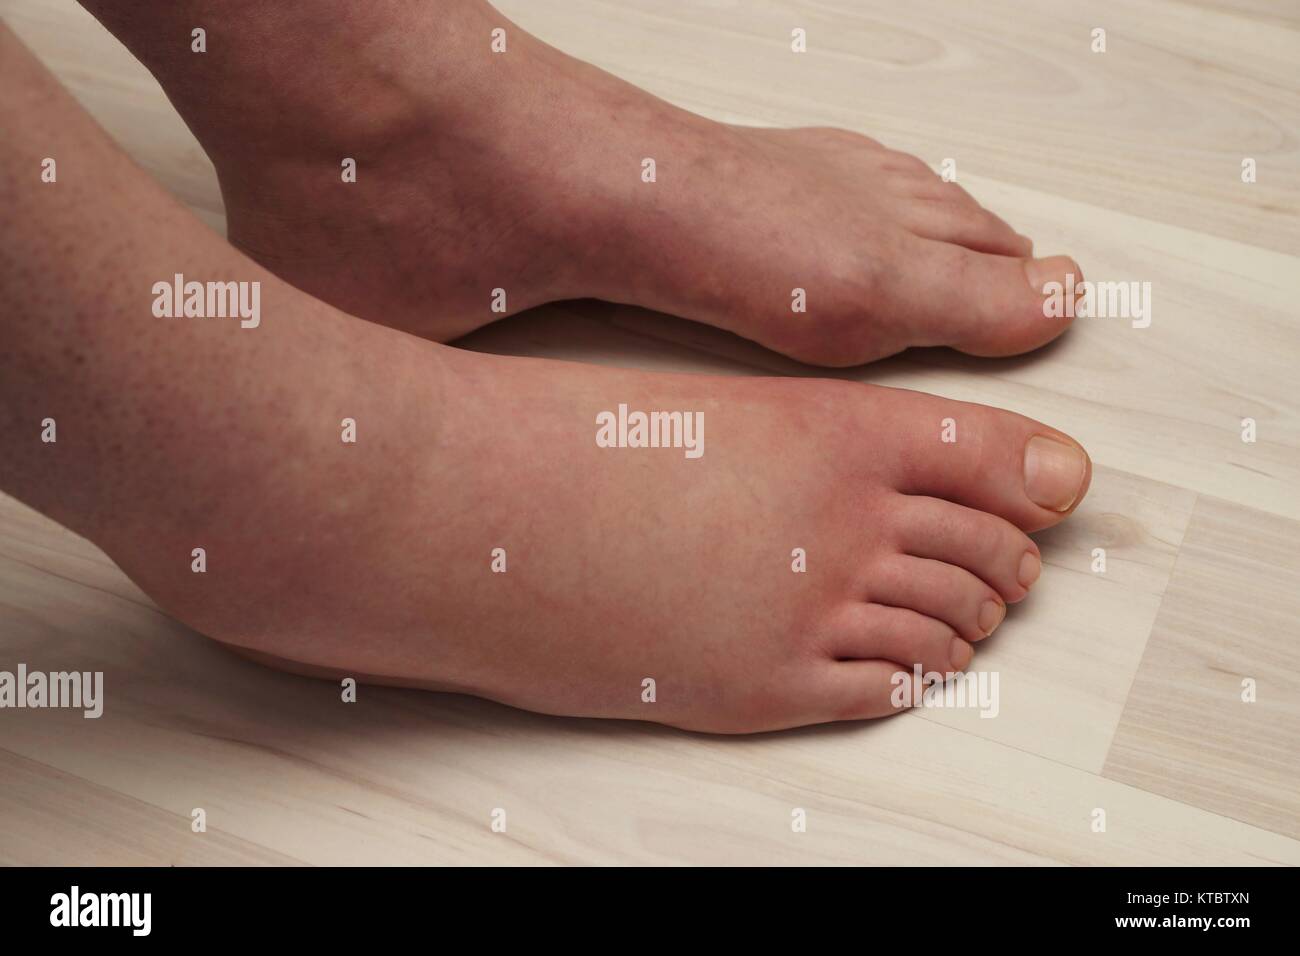 Schmerzhafte allergische Reaktion auf den Fuß aufgrund von Wespenstich Stockfoto